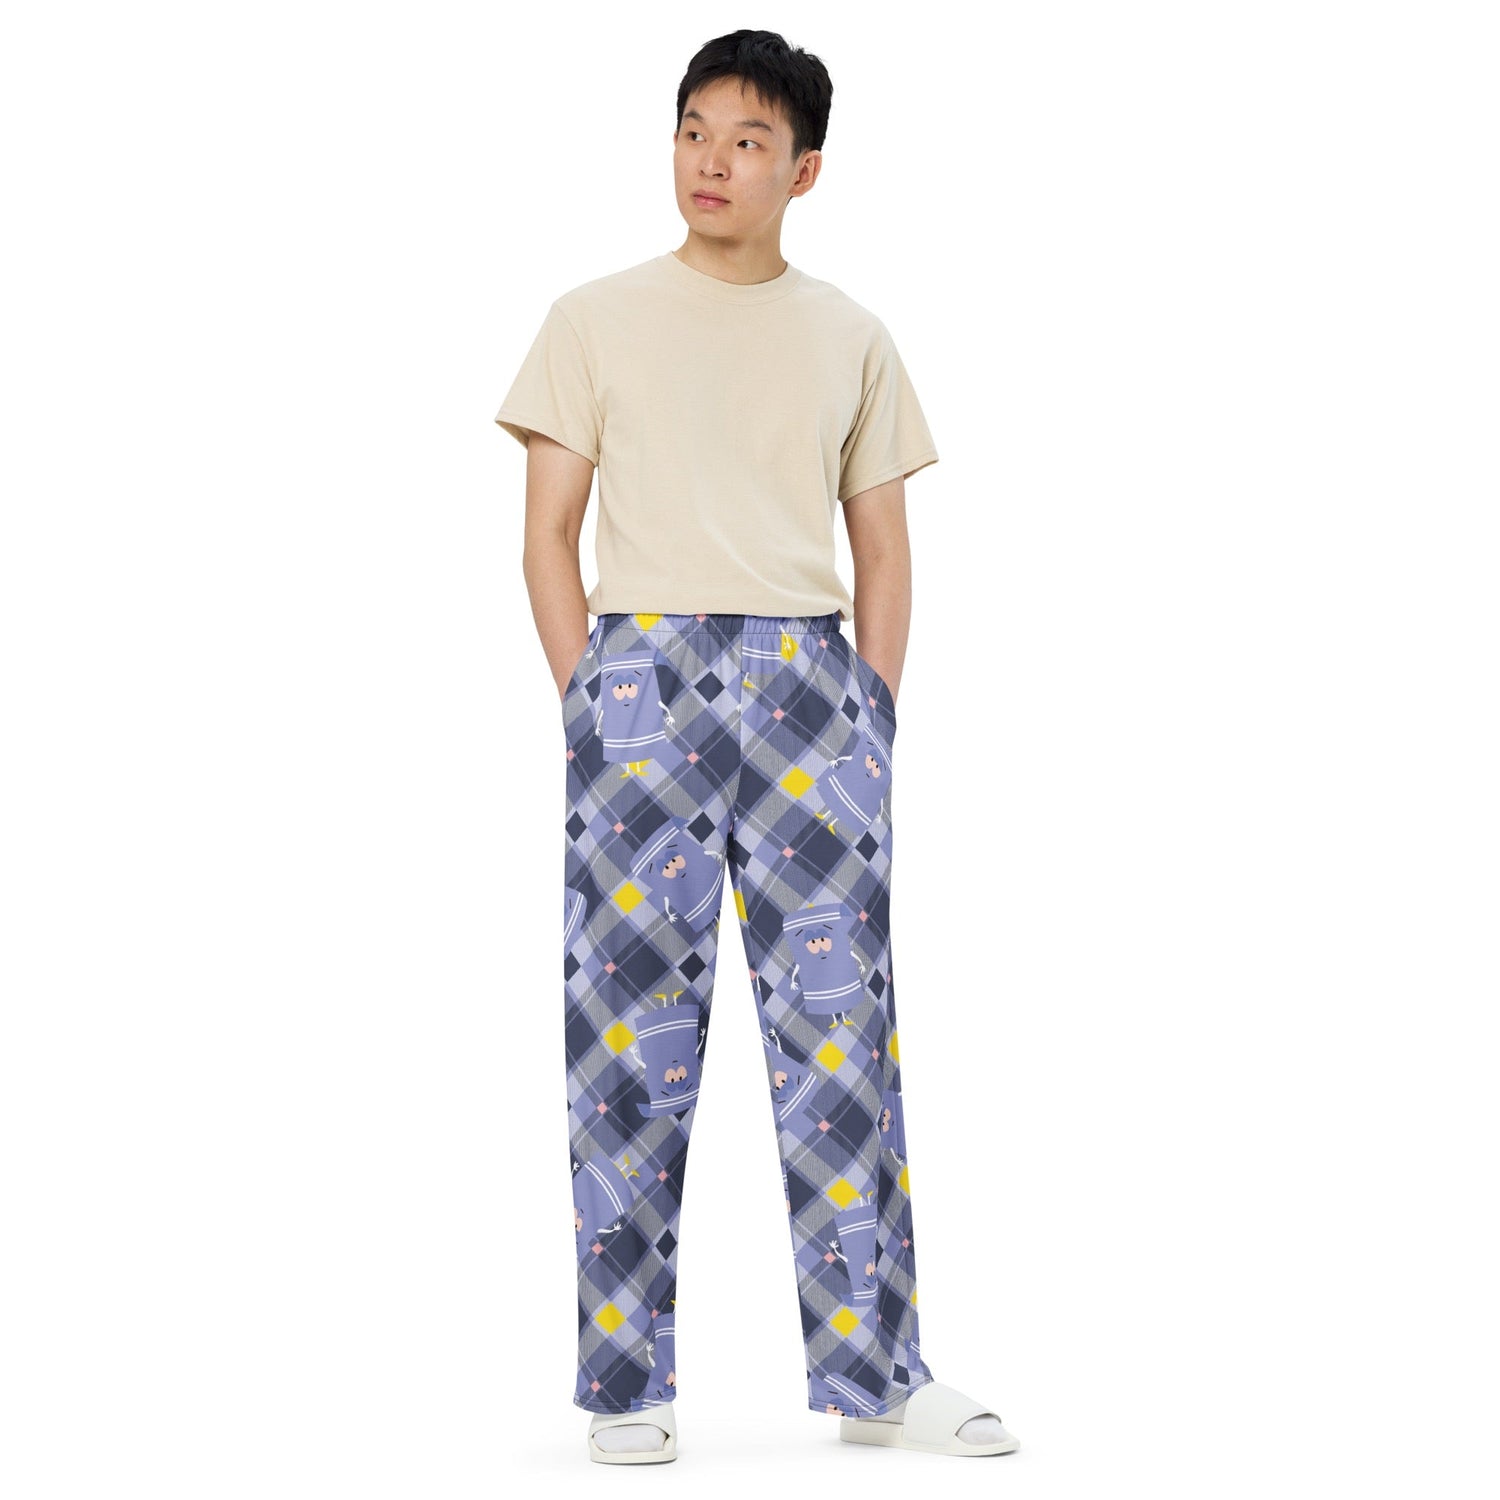 South Park Towelie Plaid Pajama Pants - Paramount Shop